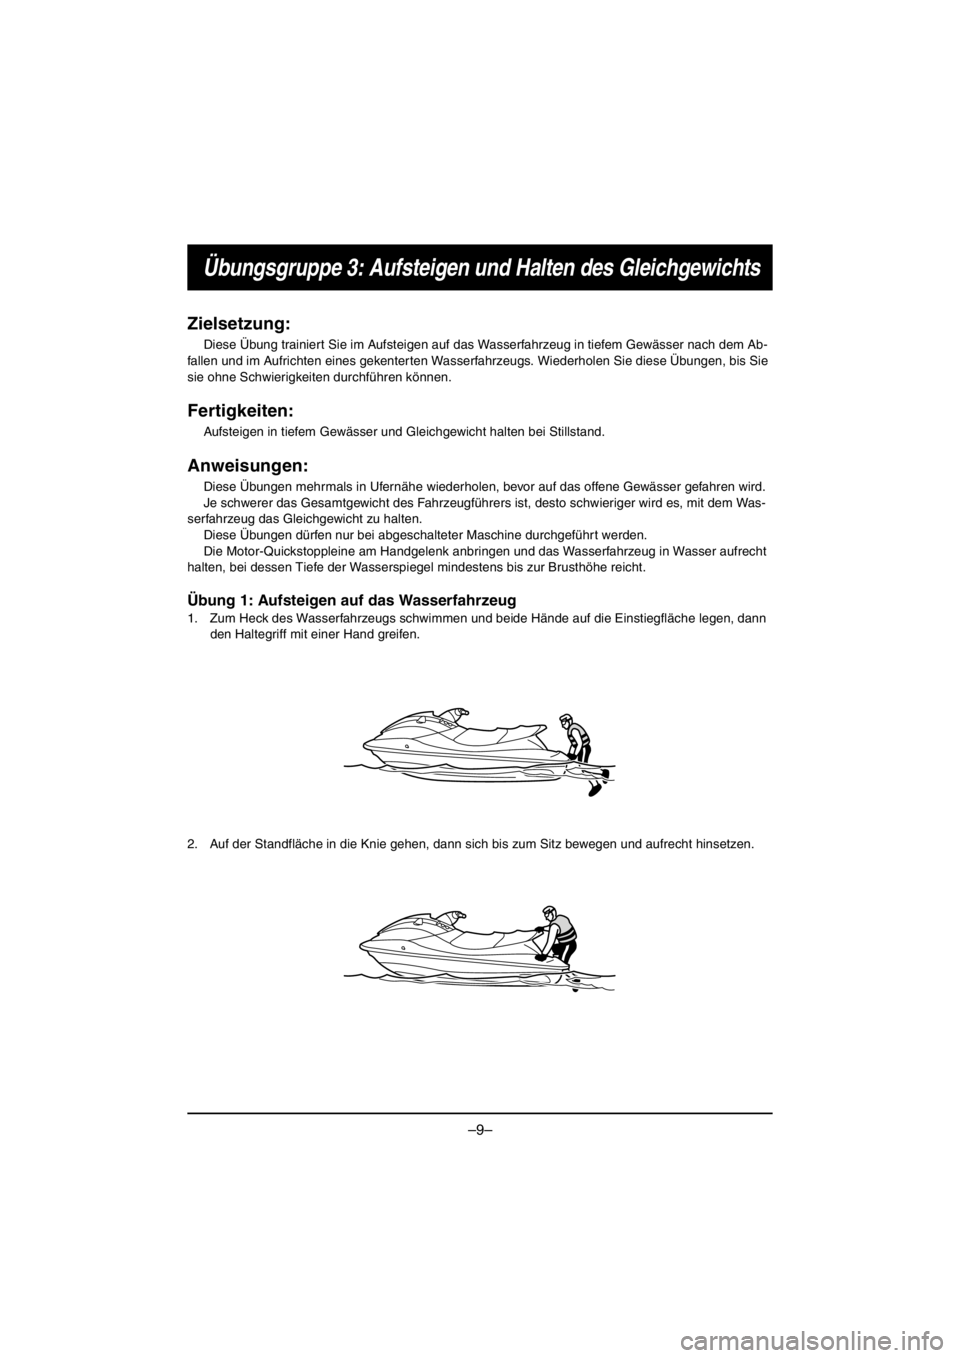 YAMAHA V1 2016  Notices Demploi (in French) –9–
Übungsgruppe 3: Aufsteigen und Halten des Gleichgewichts
Zielsetzung:
Diese Übung trainiert Sie im Aufsteigen auf das Wasserfahrzeug in tiefem Gewässer nach dem Ab-
fallen und im Aufrichten